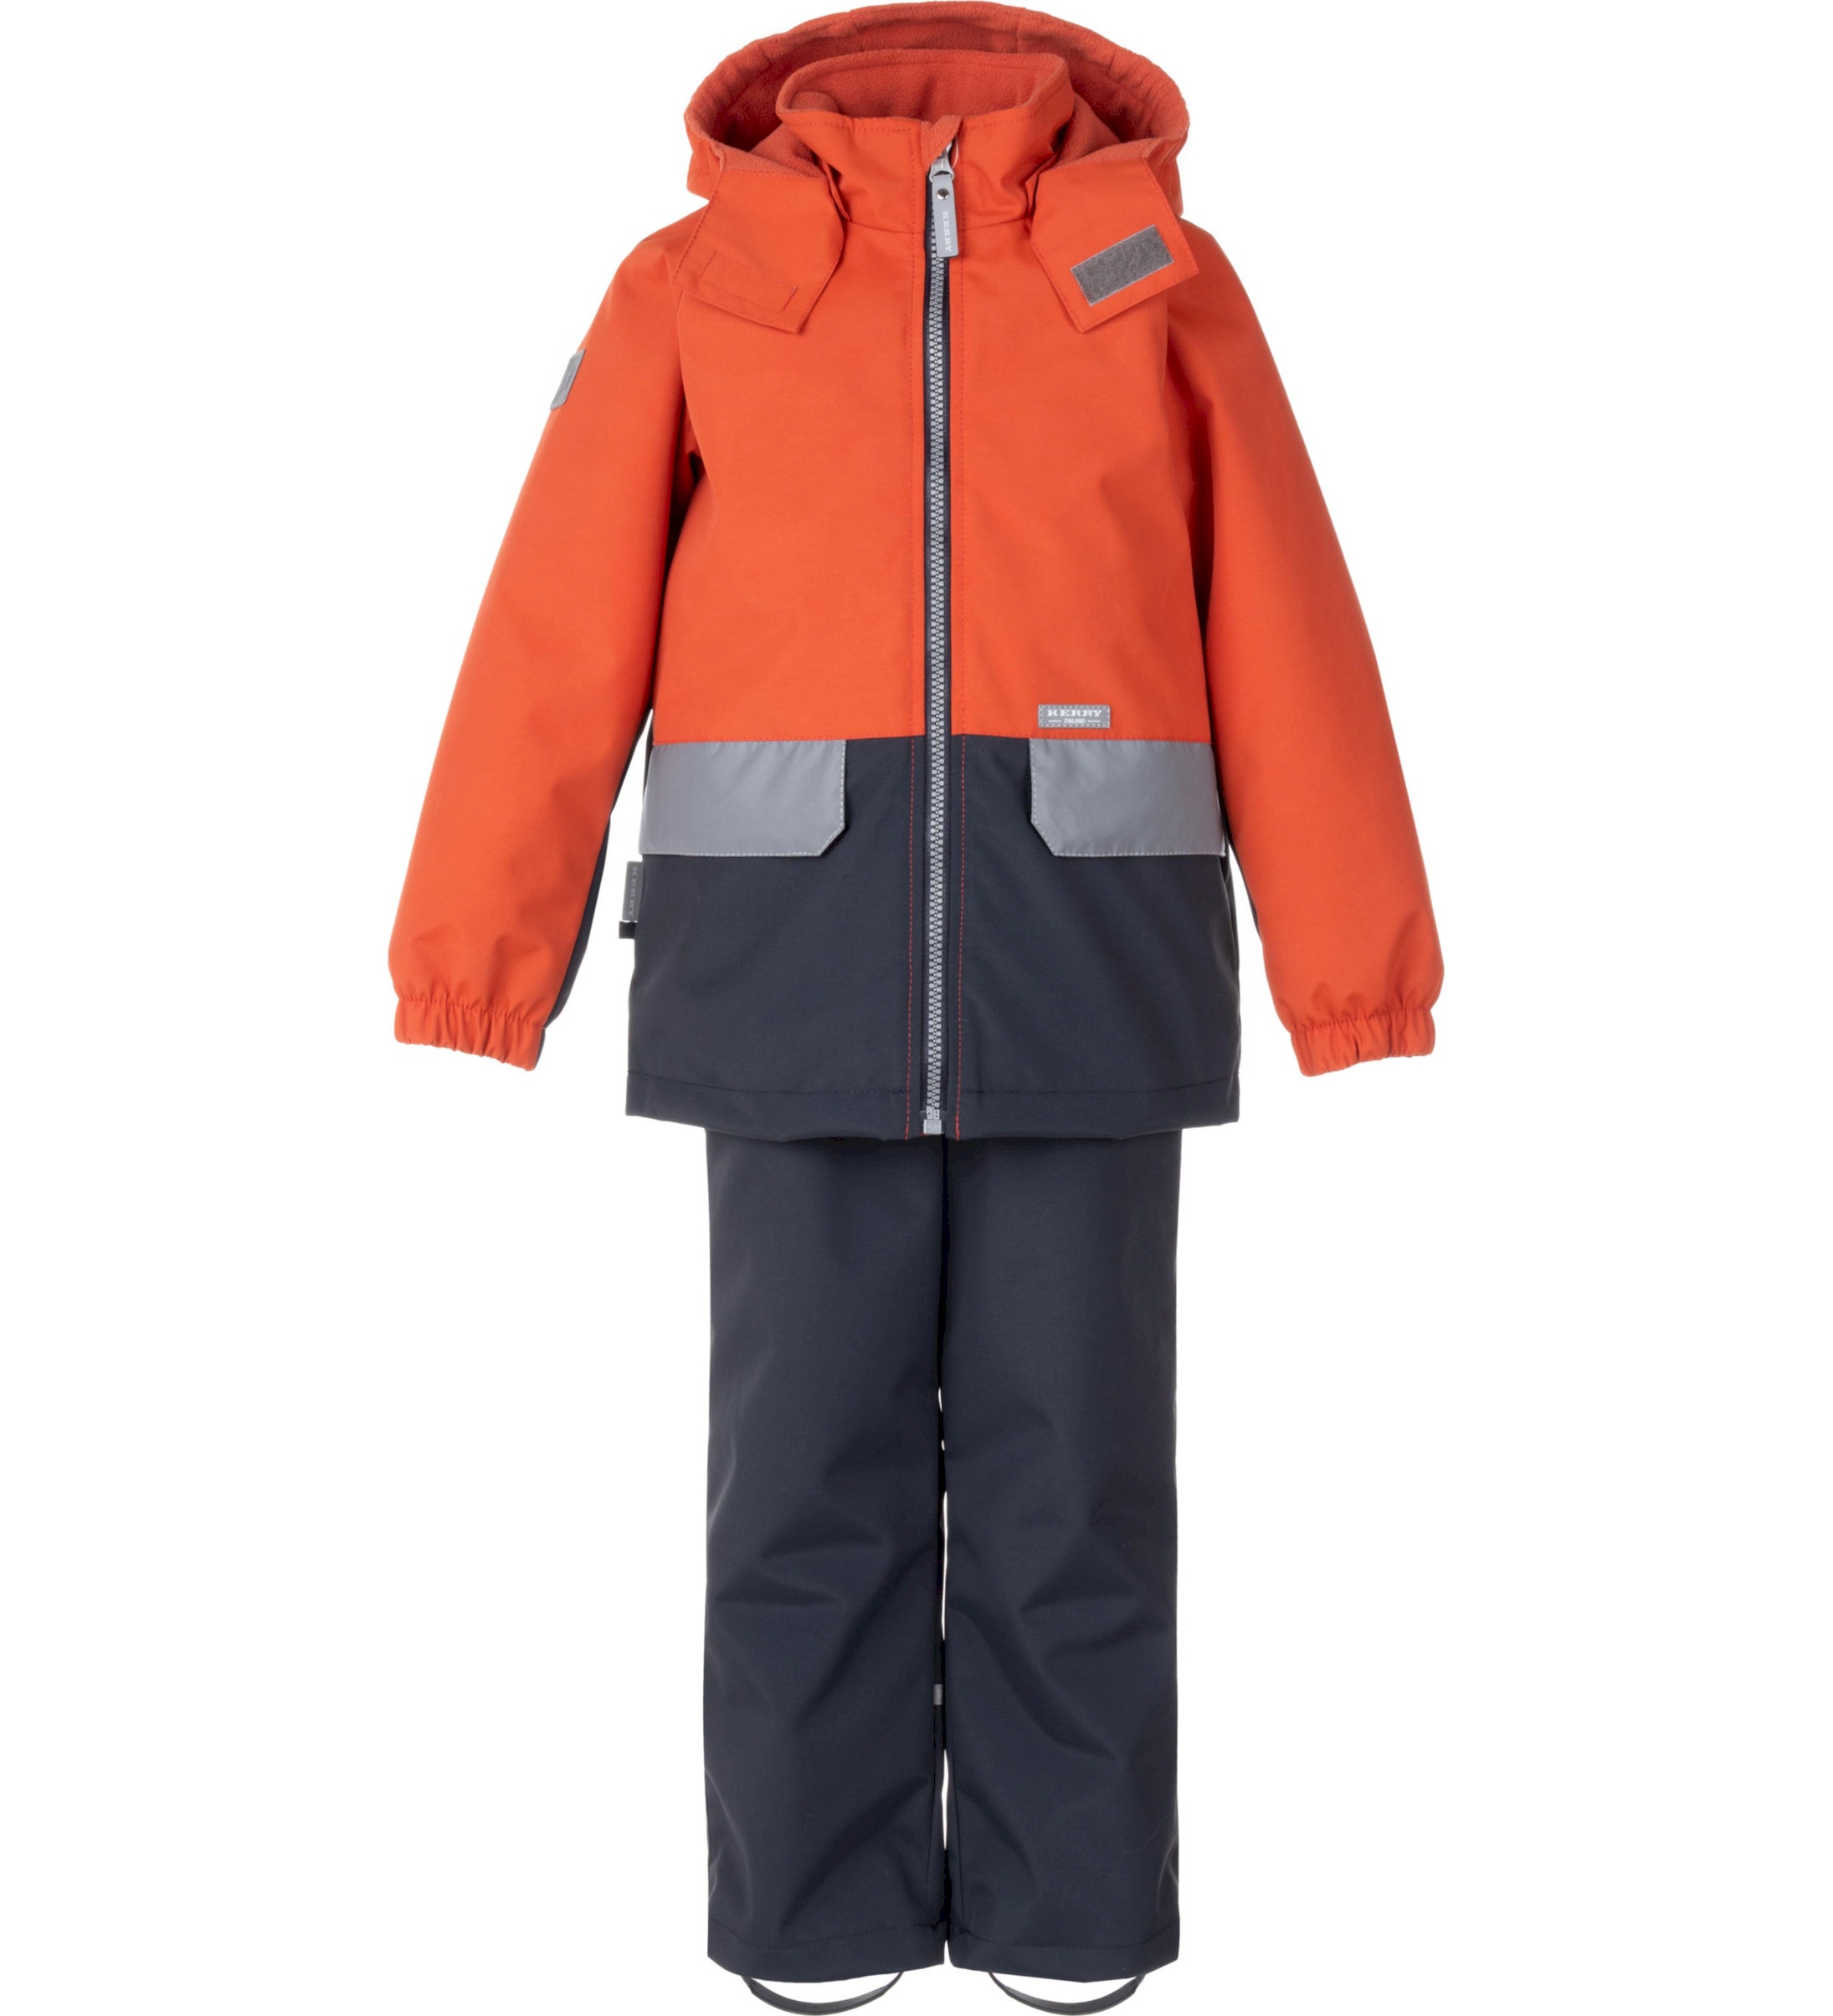 Комплект верхней одежды детский KERRY K24020, оранжевый; серый, 122